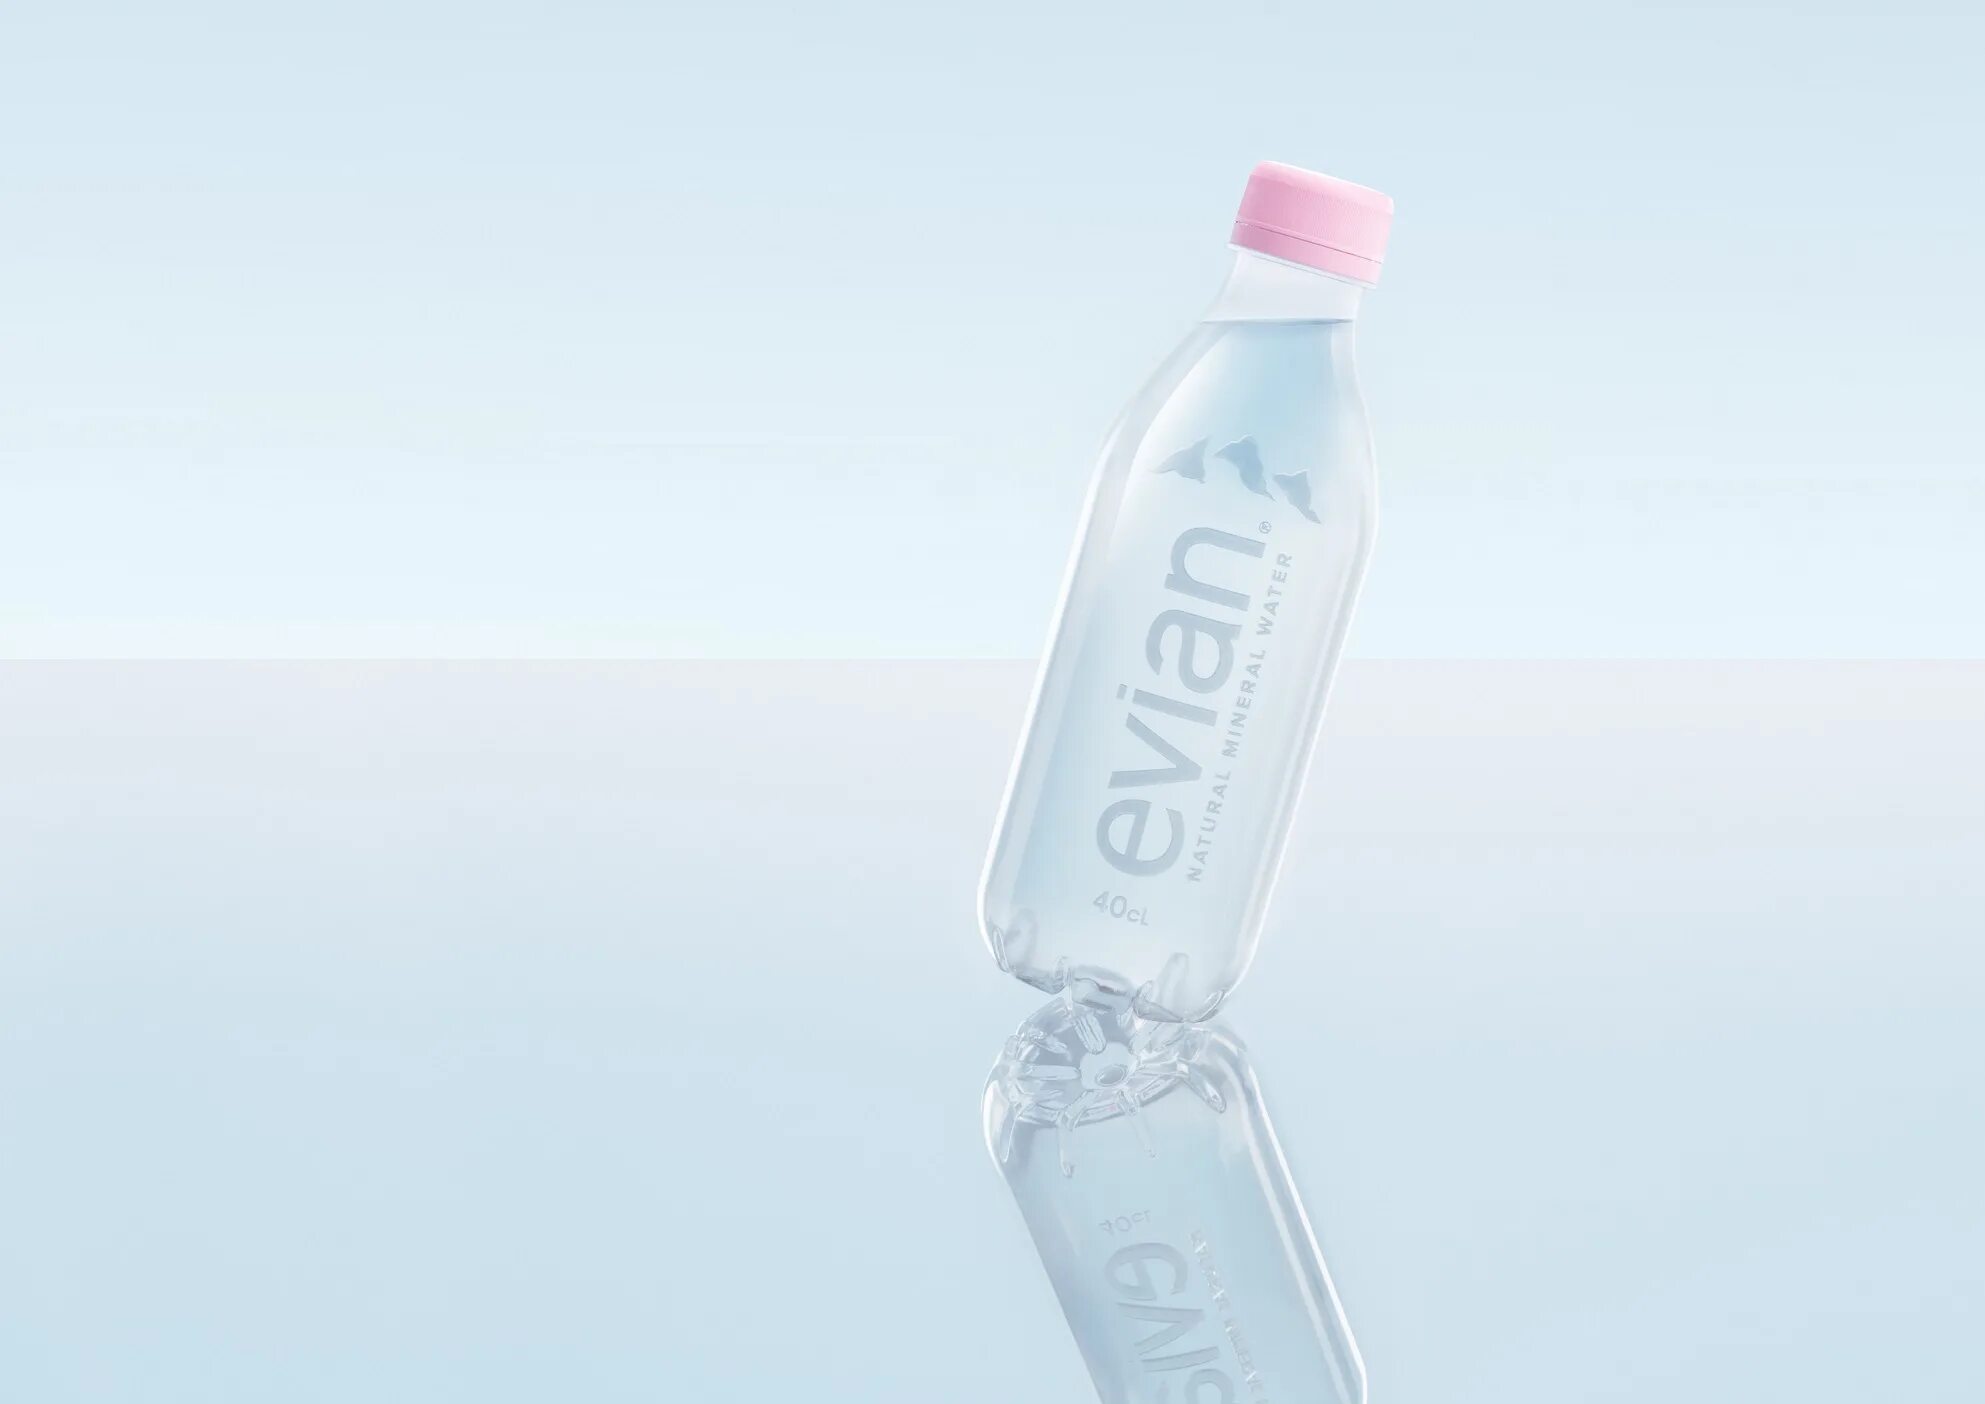 Новая бутылочка. Эвиан вода Данон. Эвиан этикетка. Бутылка для воды. Пластиковая бутылка для воды.